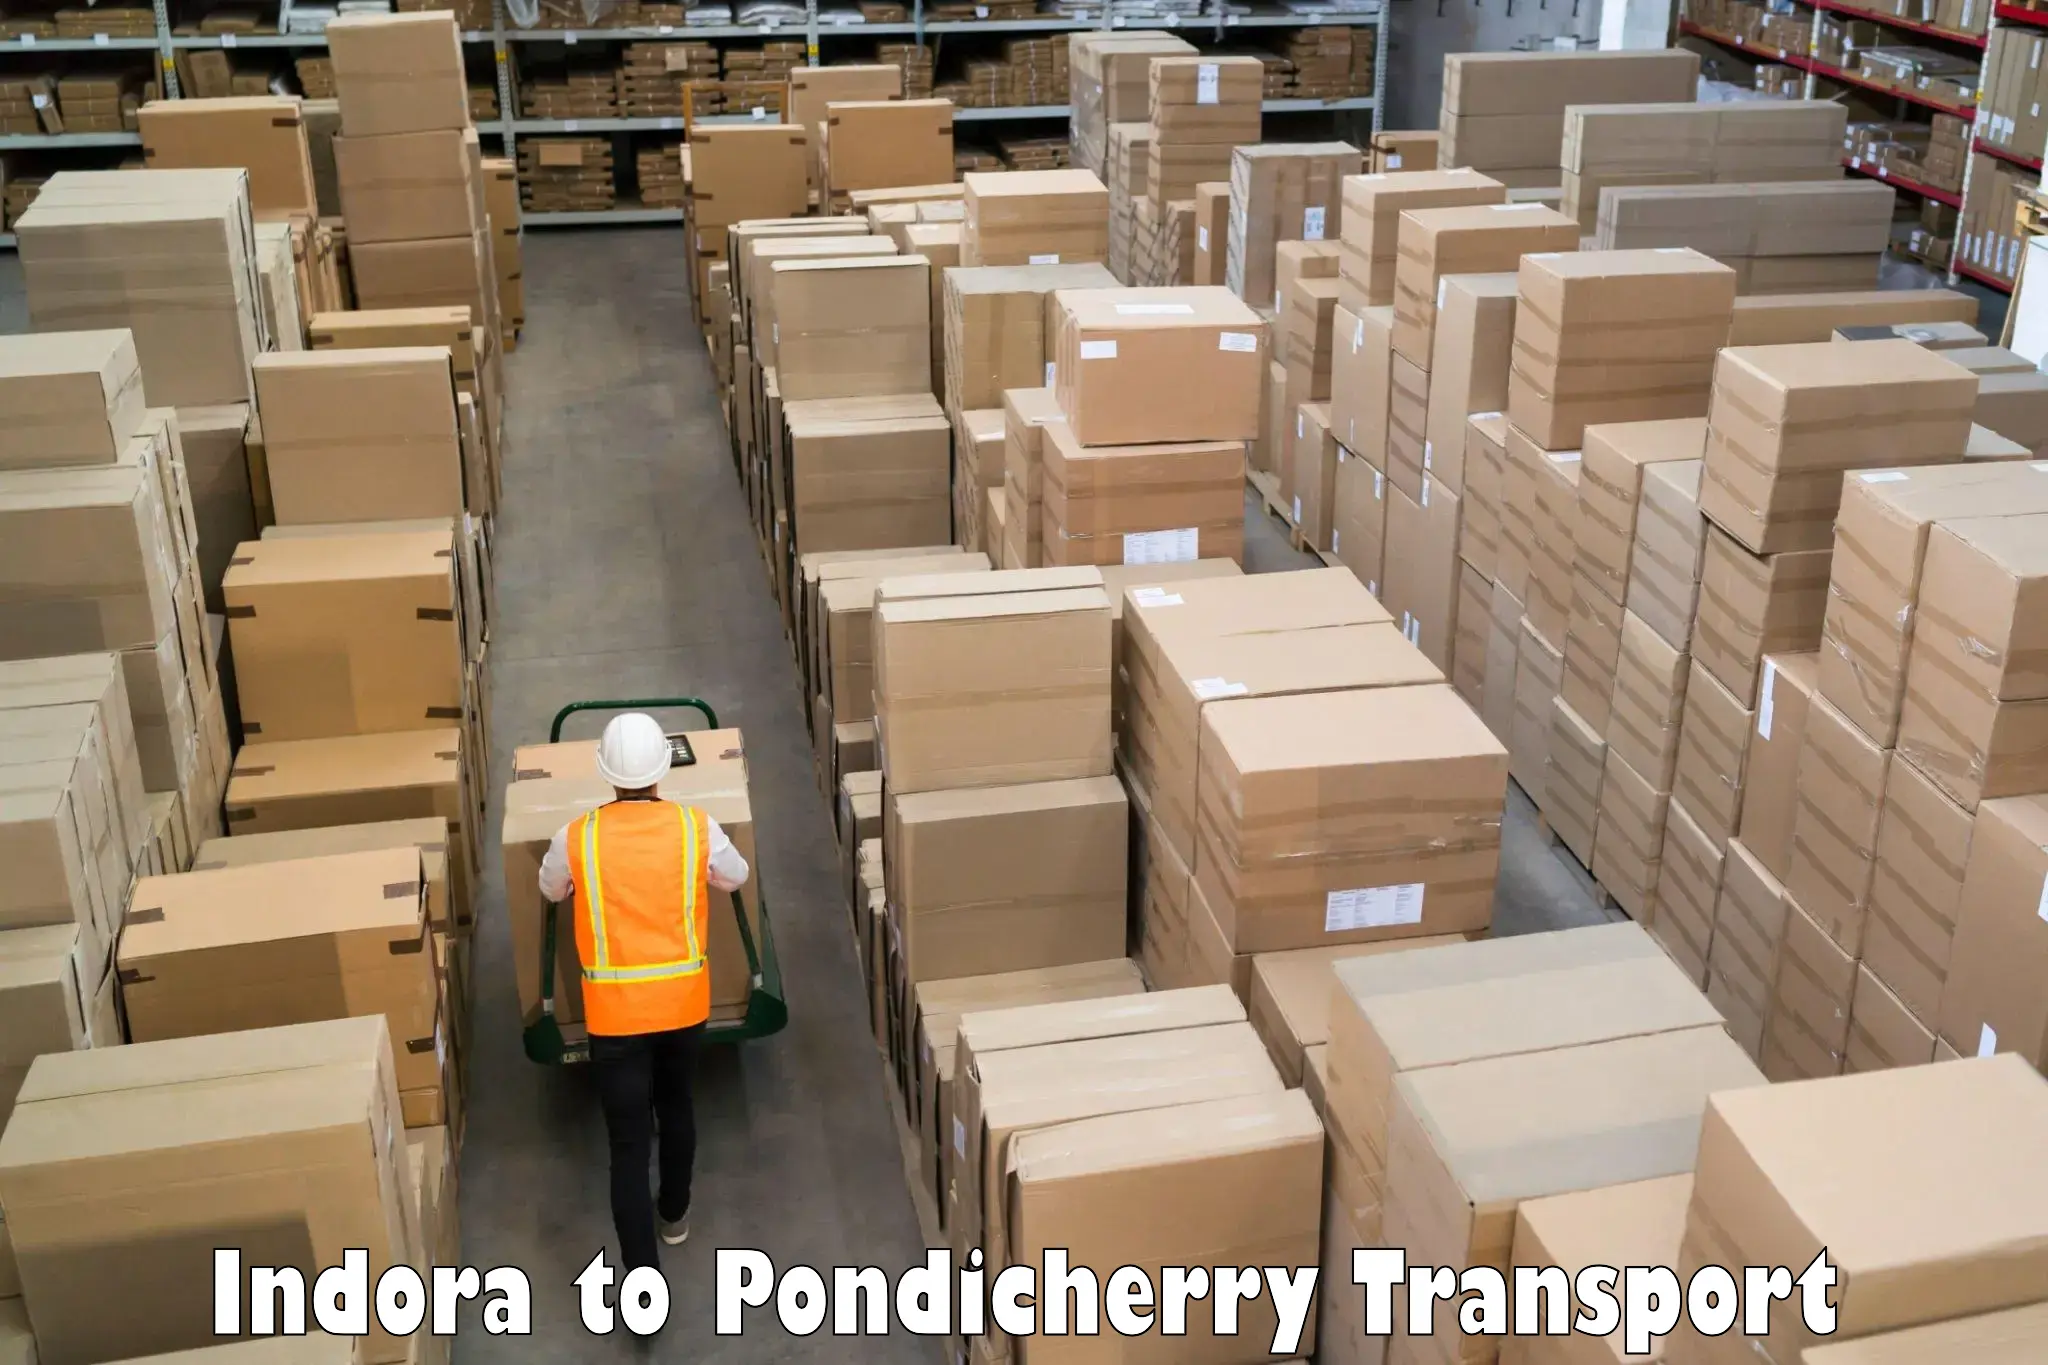 Online transport service Indora to Pondicherry